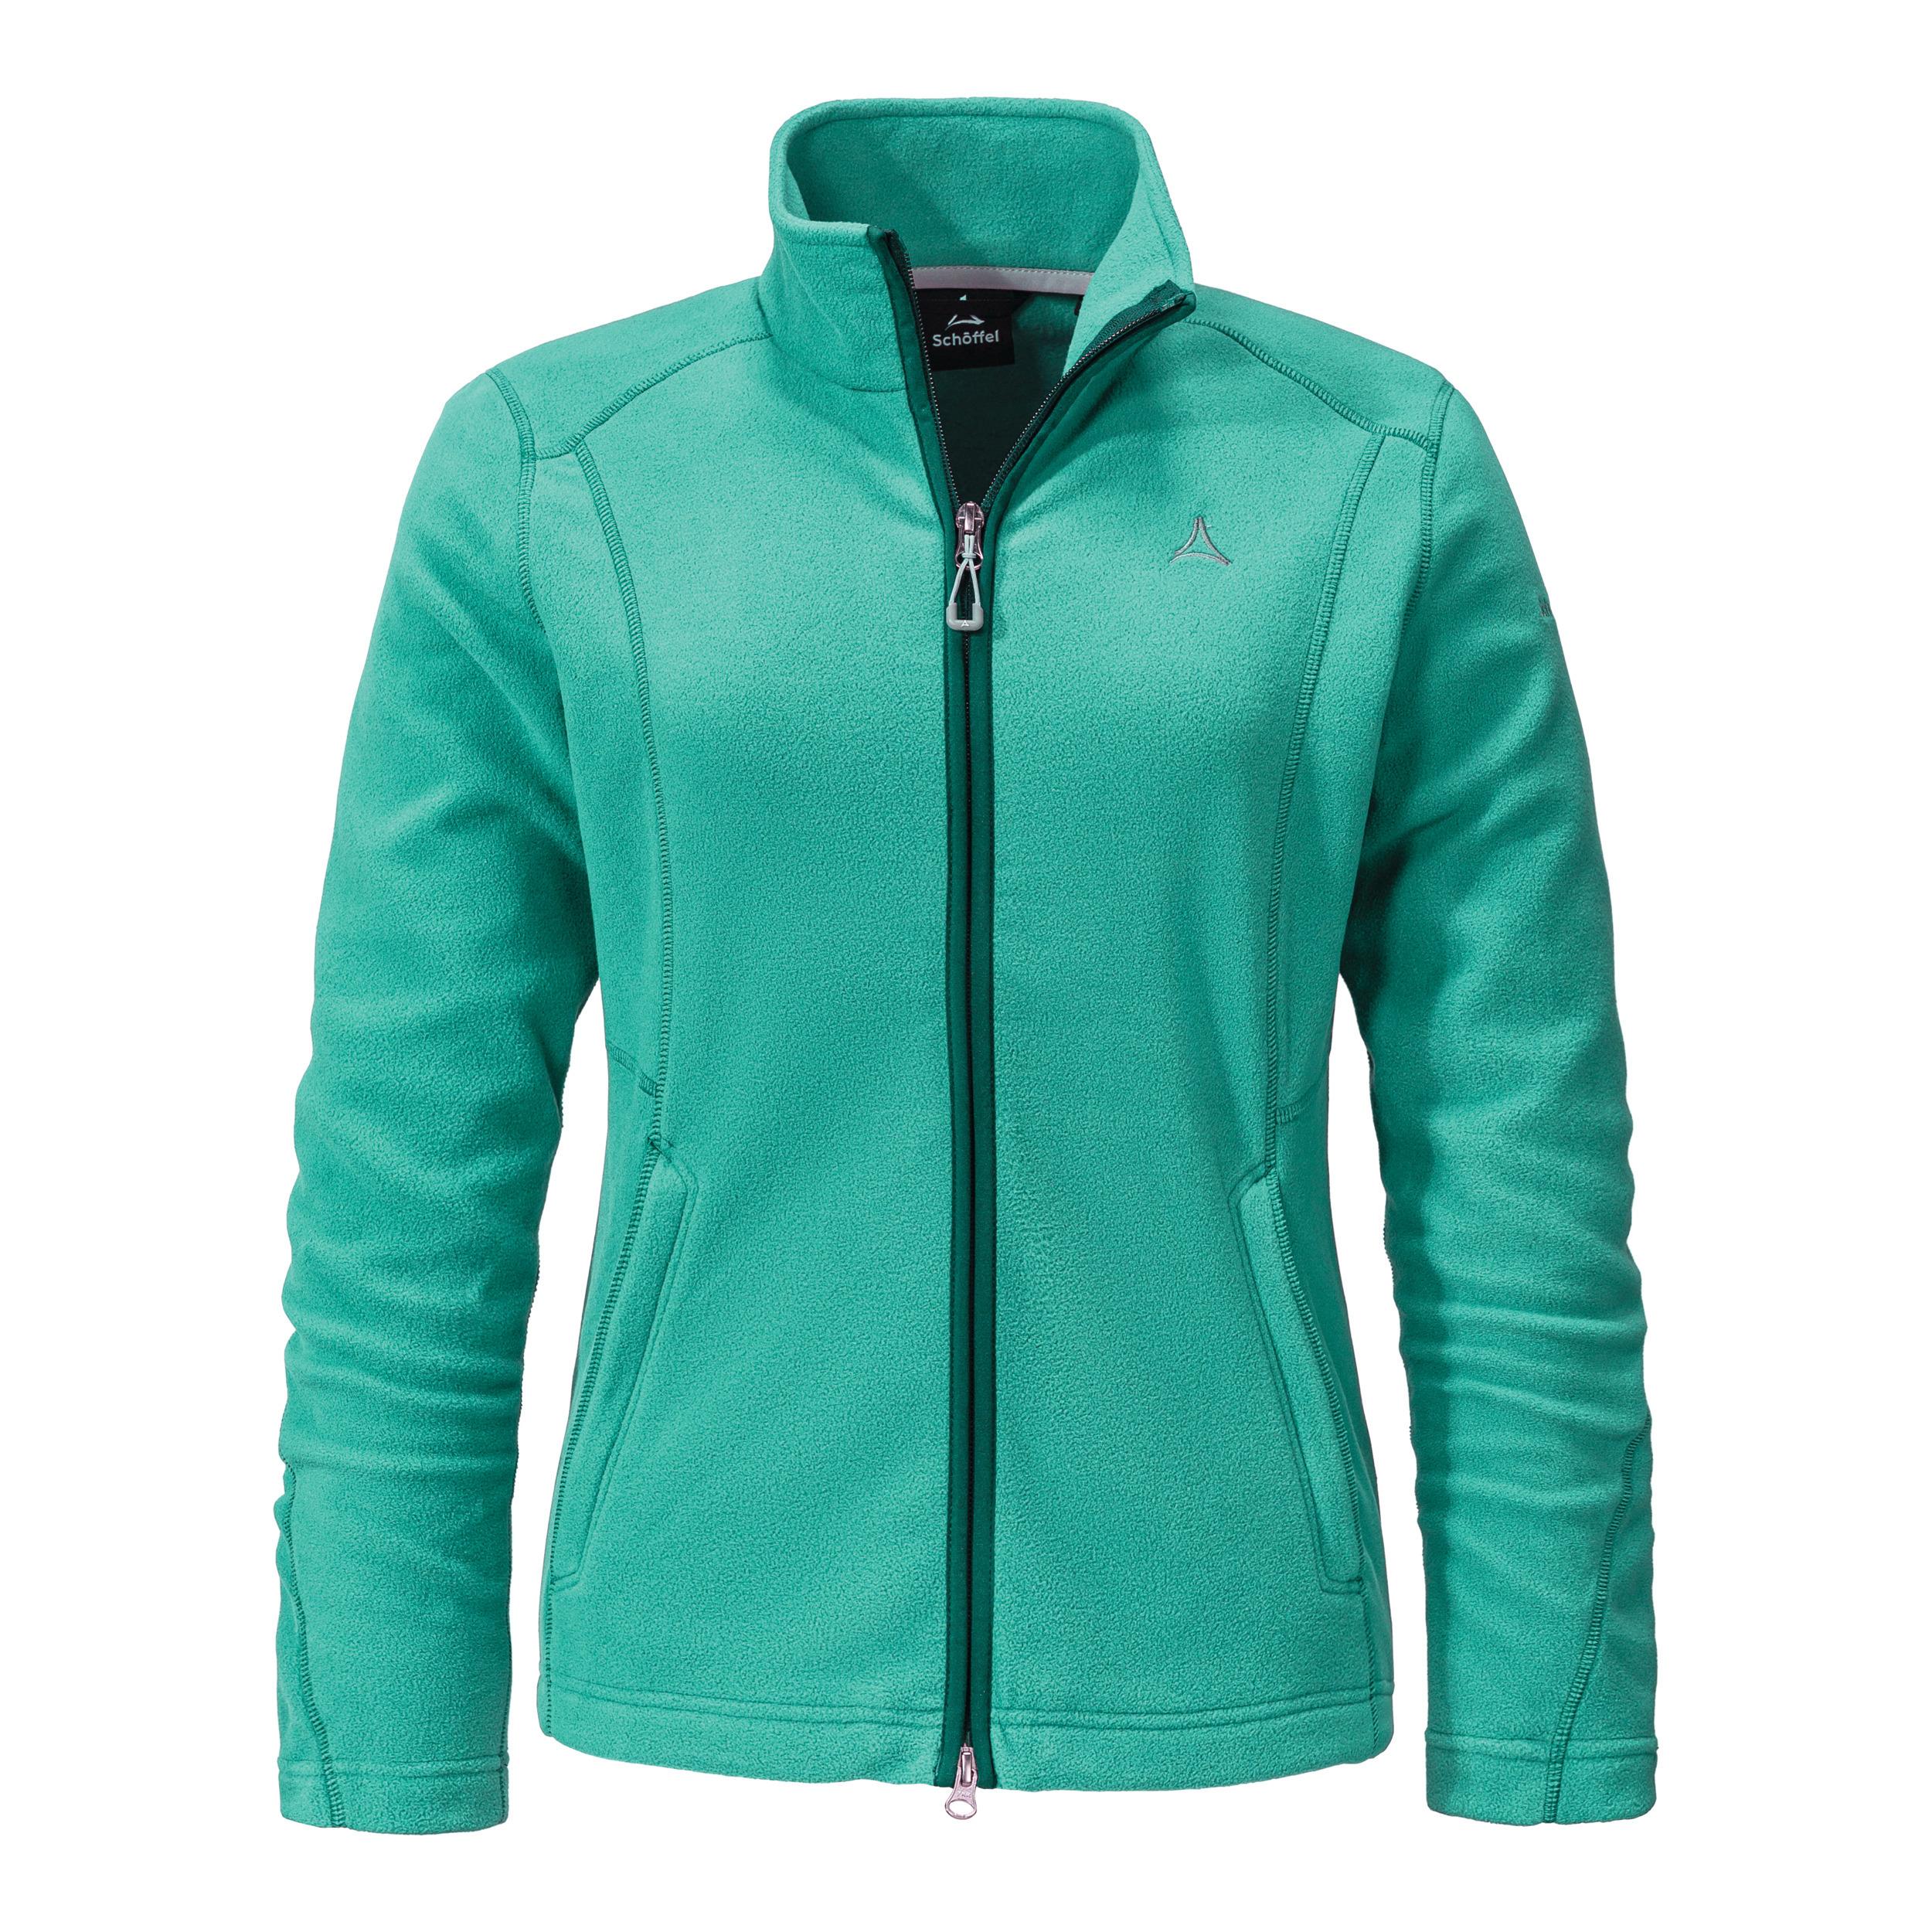 Jacket - Schöffel Fleece Shop von SportScheck 7290 Leona3 Damen kaufen Fleecejacke im grün Online